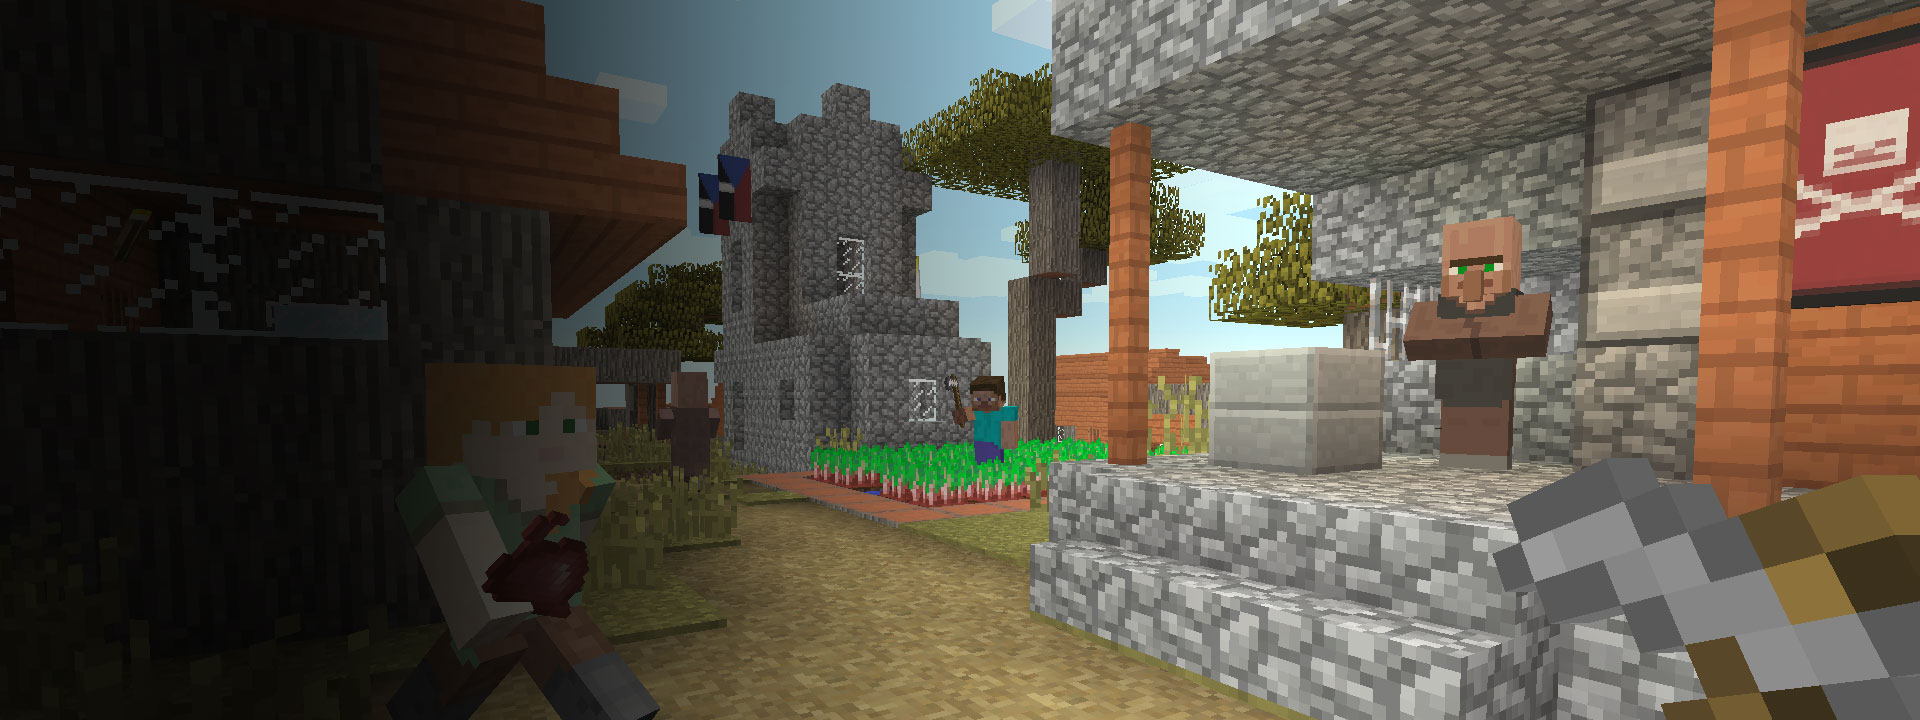 Diverse case e alcuni personaggi di Minecraft che camminano in primo piano.